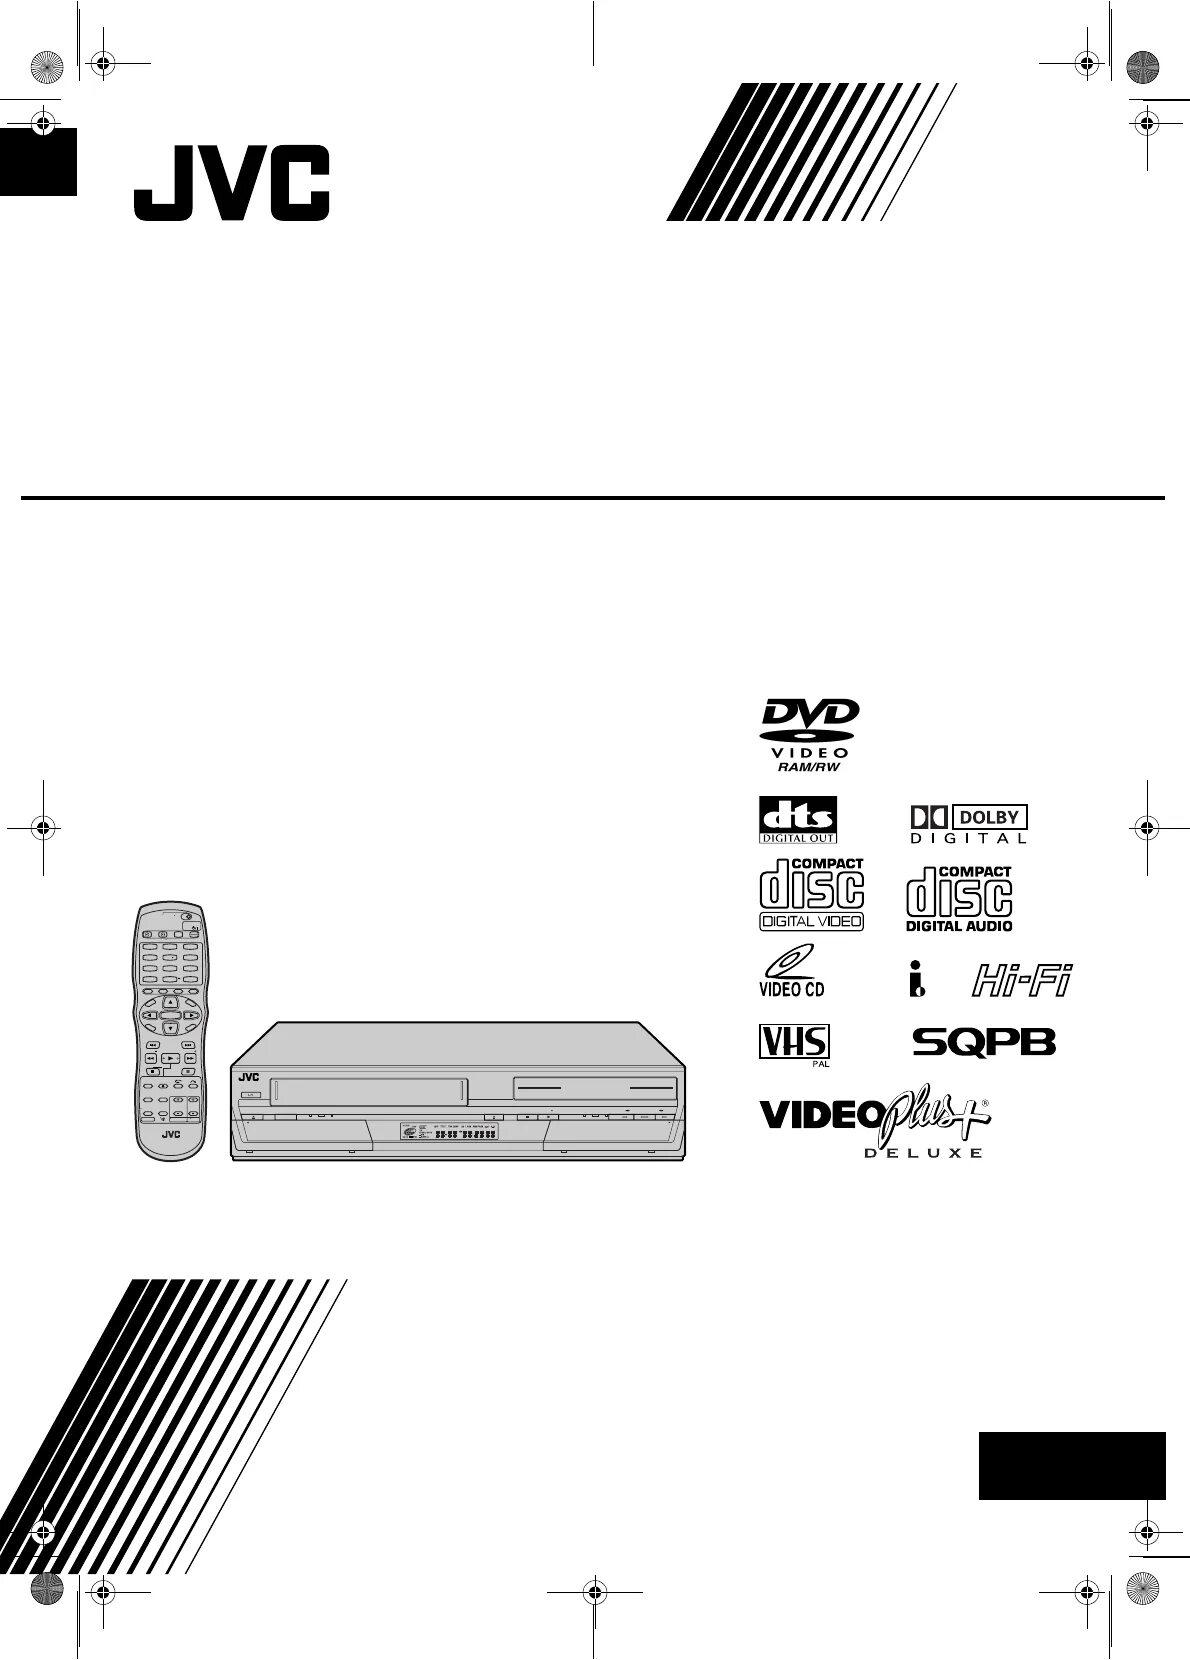 JVC SR-mv30 DVD. JVC HR-xv45. JVC Dr-m30. VCR OSD.